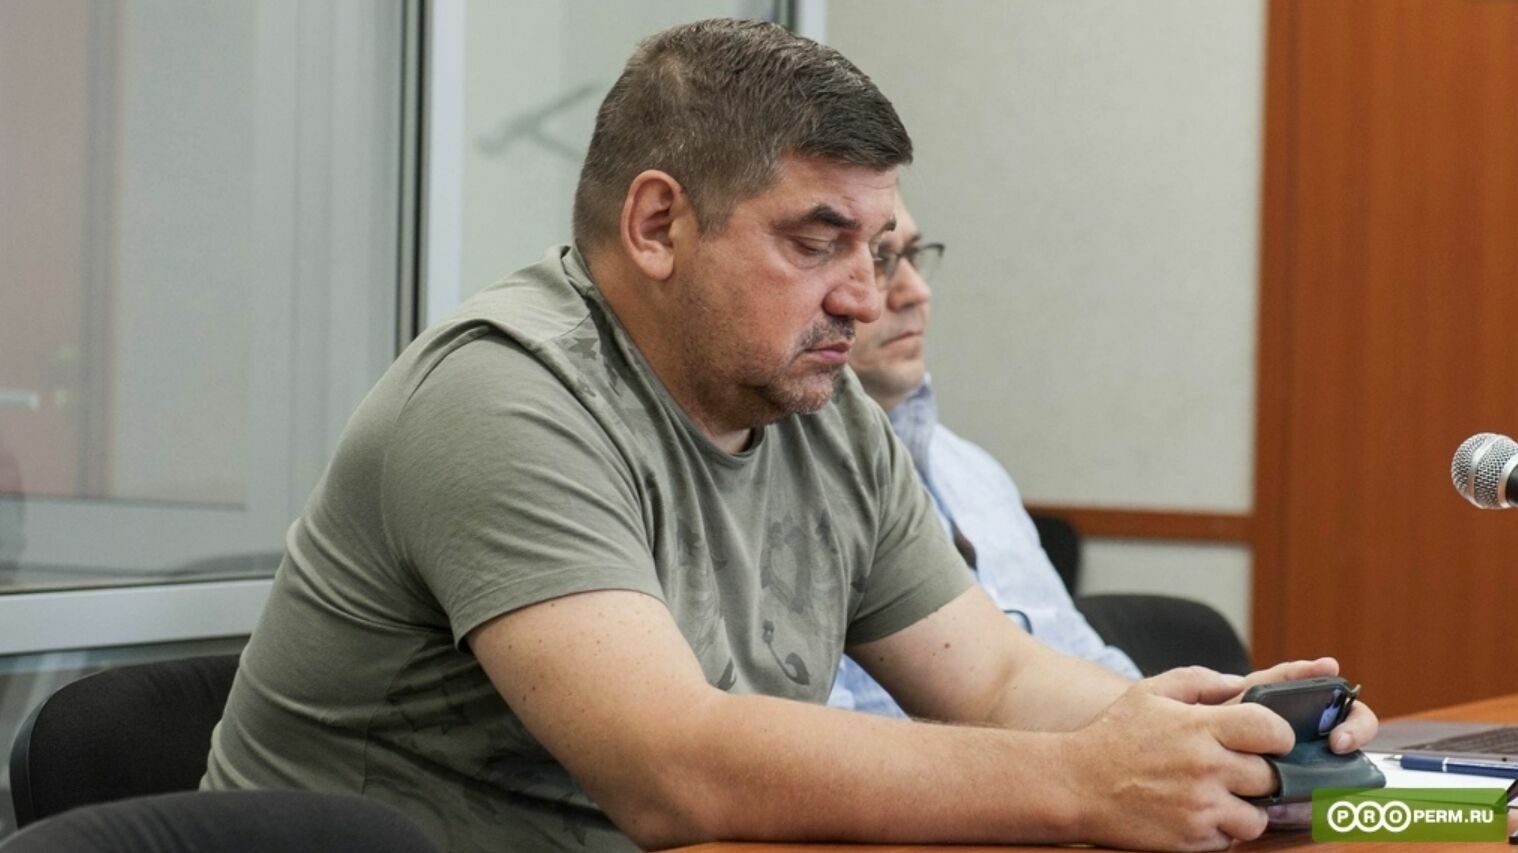 Бывший руководитель УКС Пермского края допрошен по делу о взятке в 3 миллиона рублей